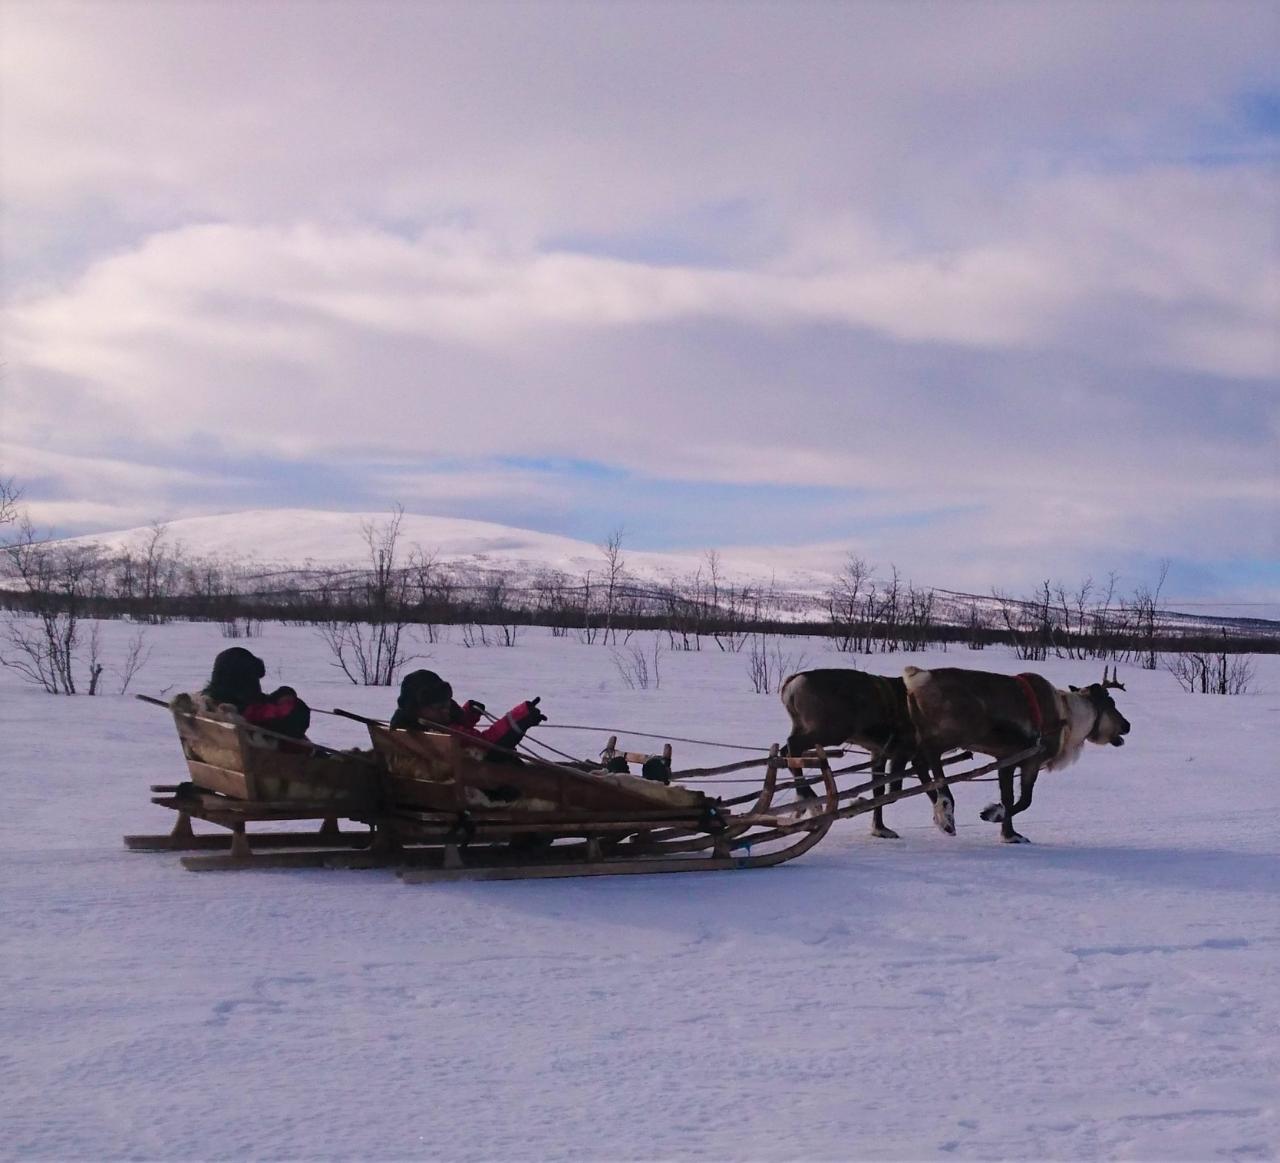 ÁRBI VUOJAN - Sami Excursion with Reindeer Sledding